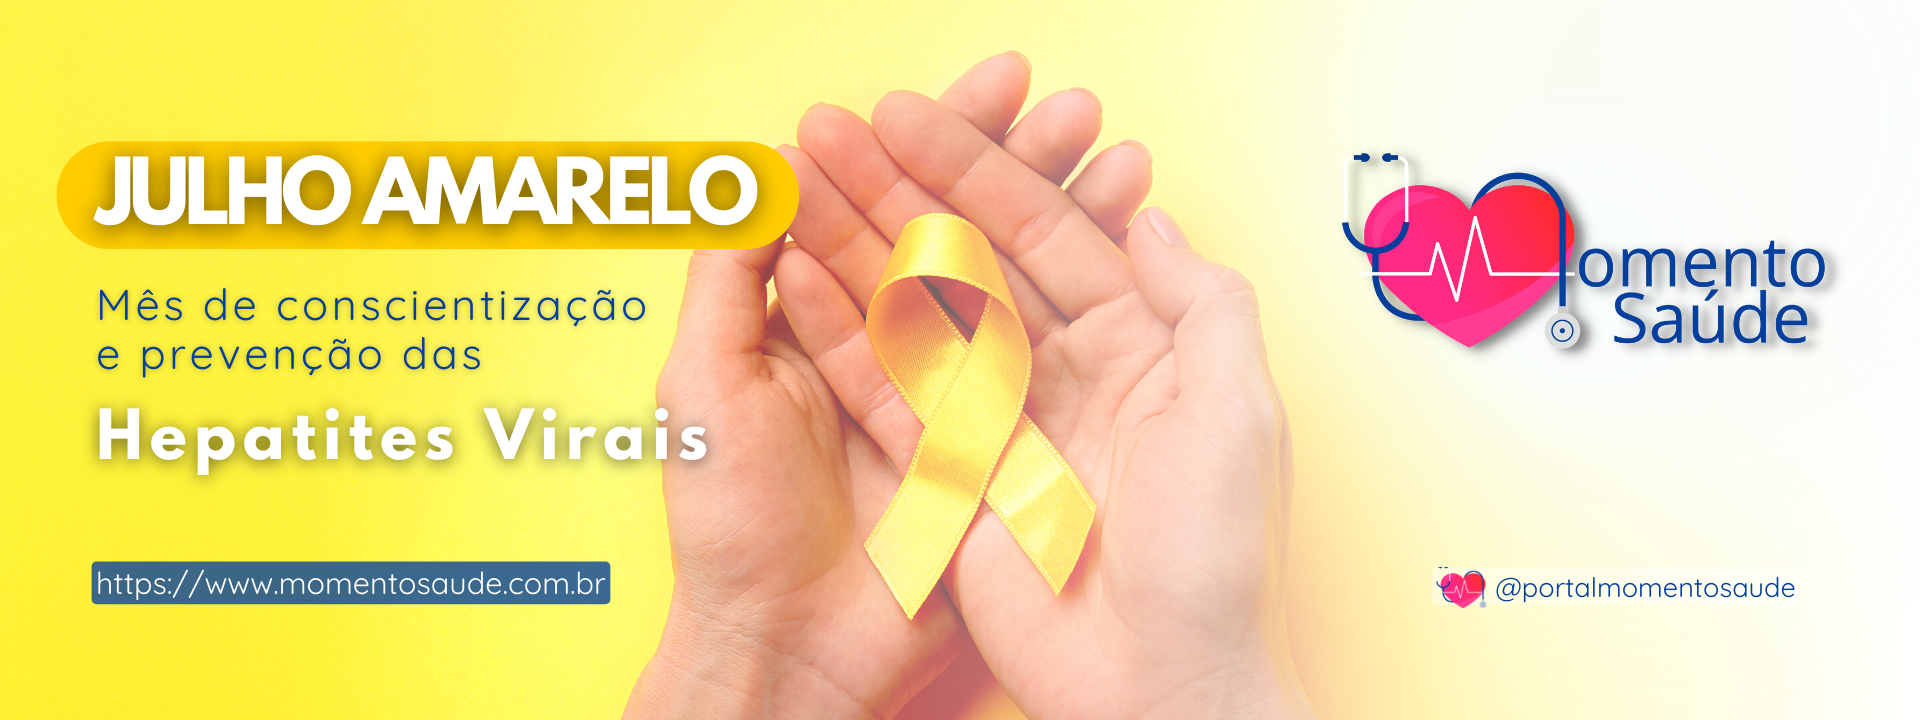 Campanha Julho Amarelo - Prevenção de hepatites virais